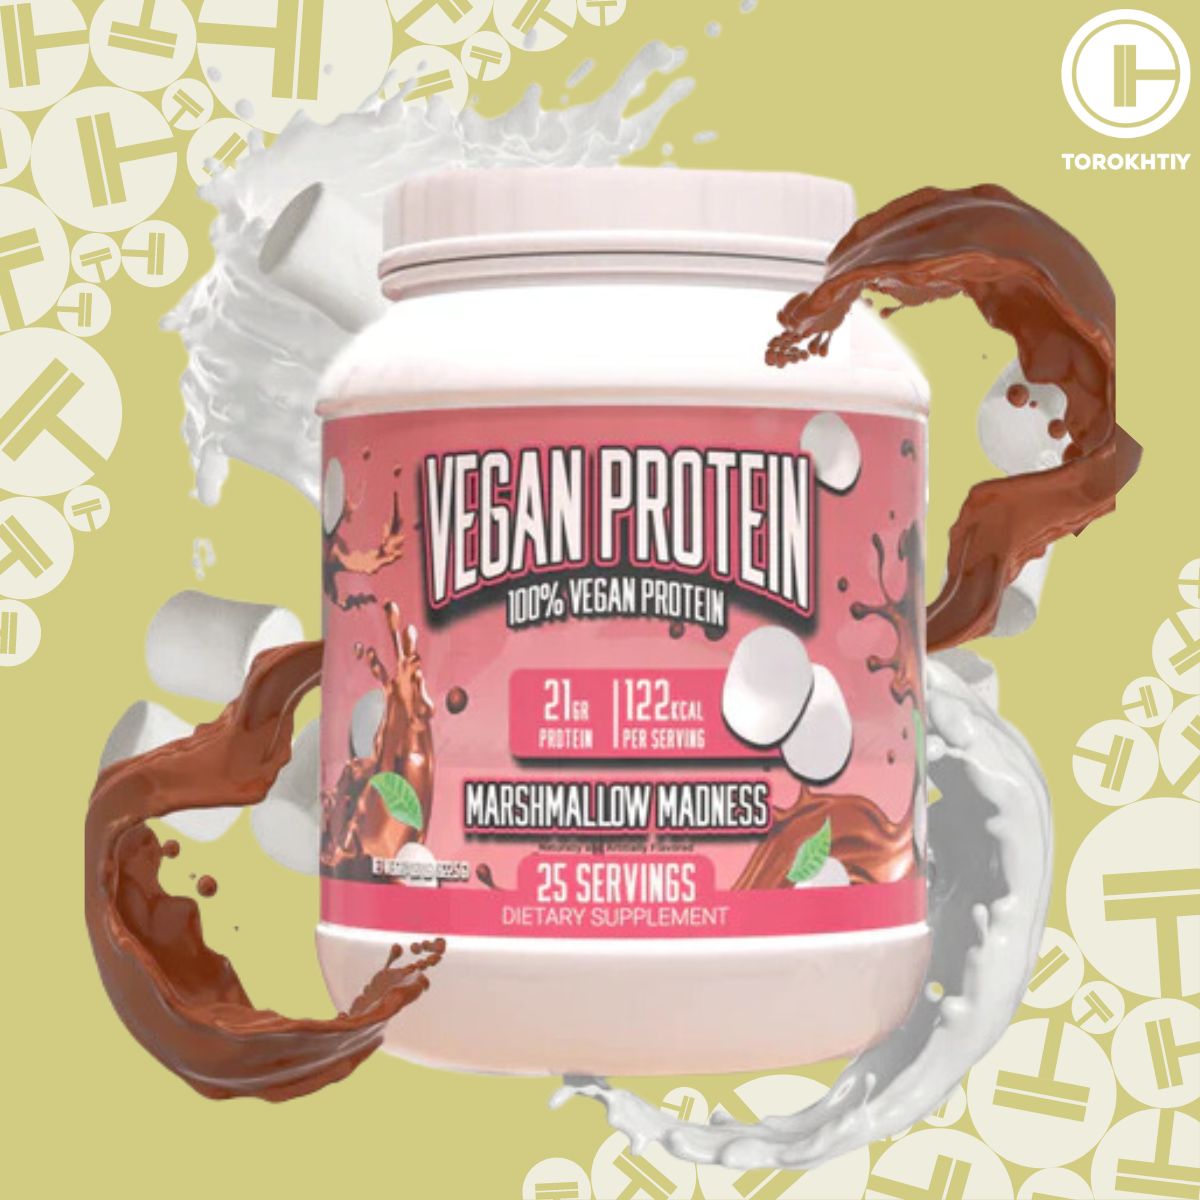 Vegan Protein by Huge